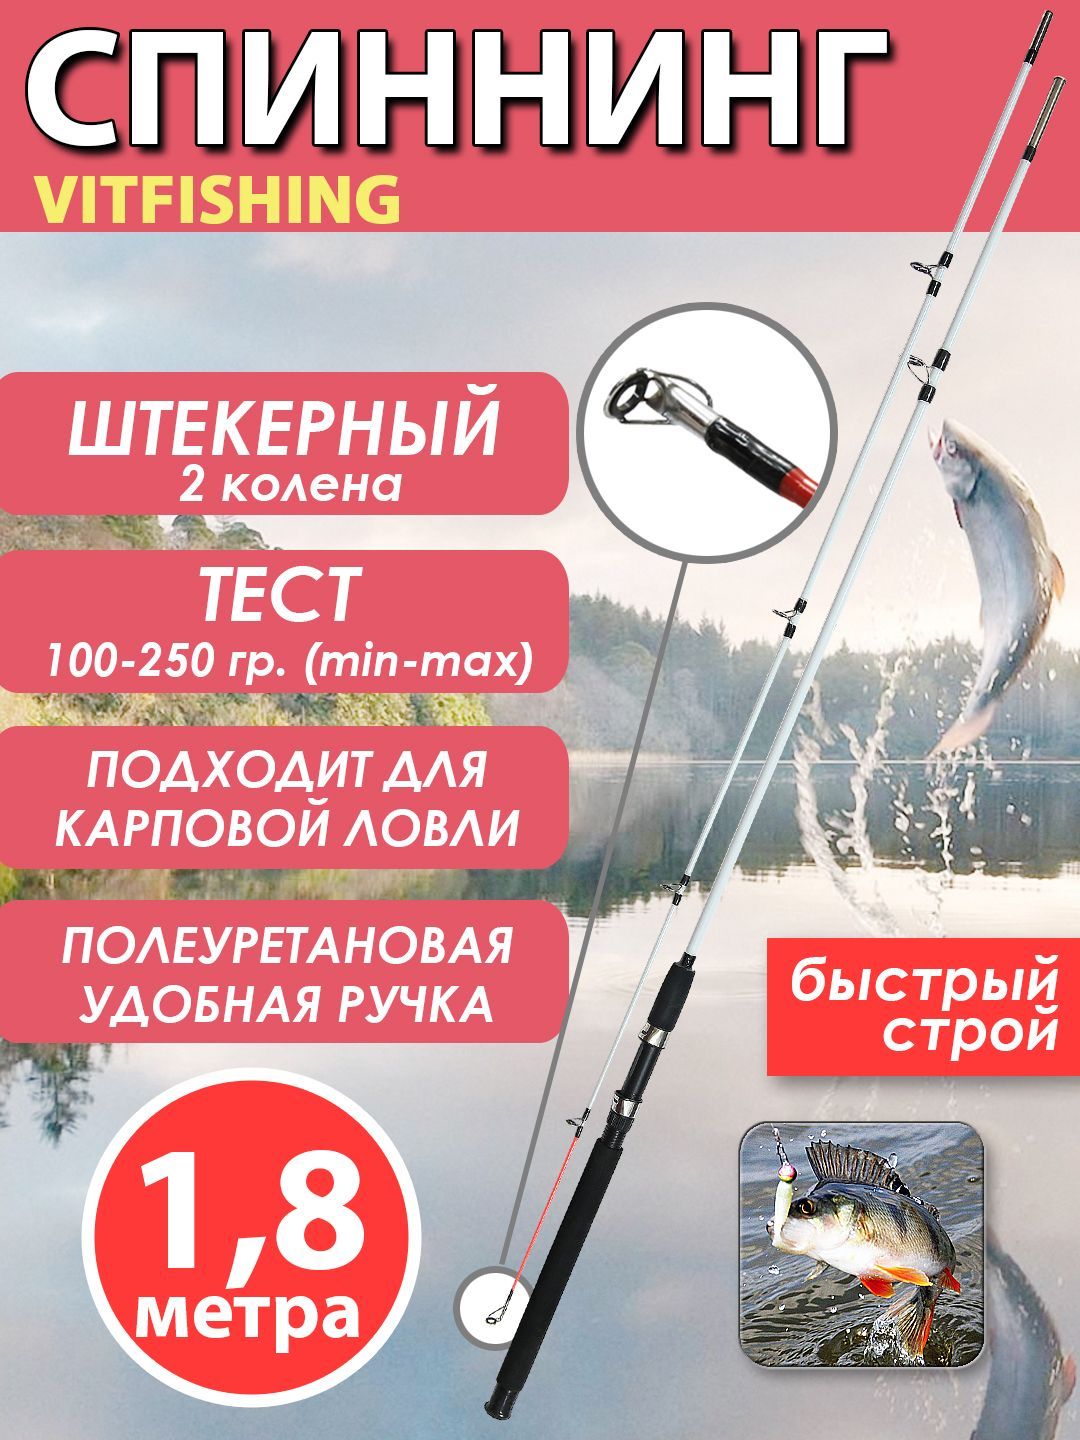 Выбор штекерного спиннинга 4 колена для рыбалки